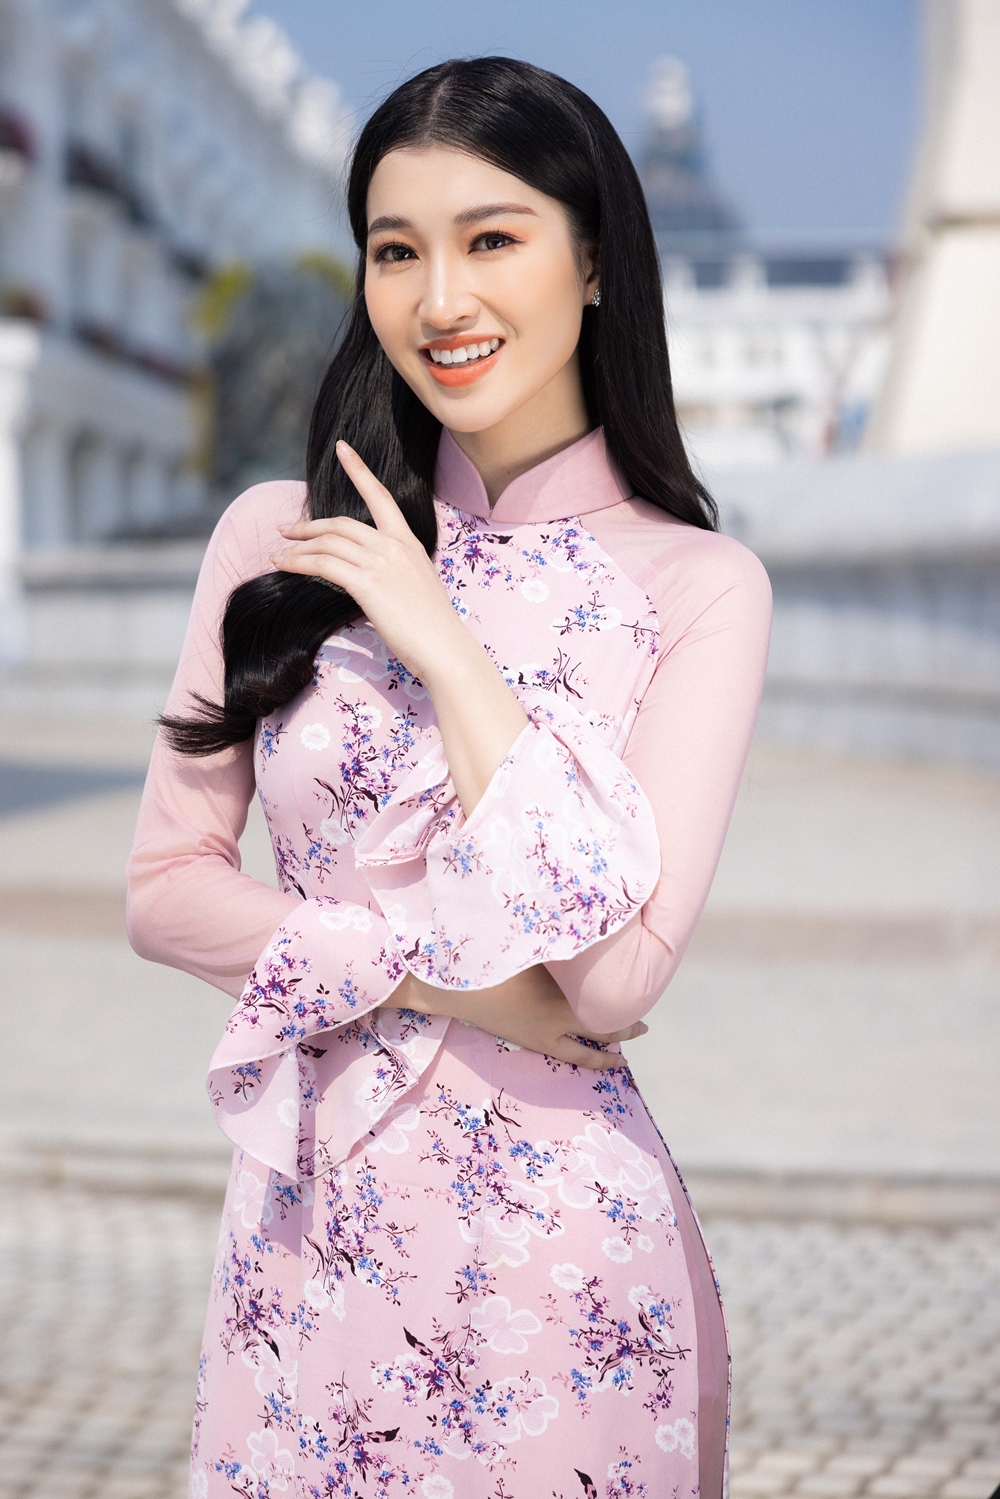 chiem nguong 10 ung vien hang dau cho danh hieu miss world vietnam 2022 hinh 9